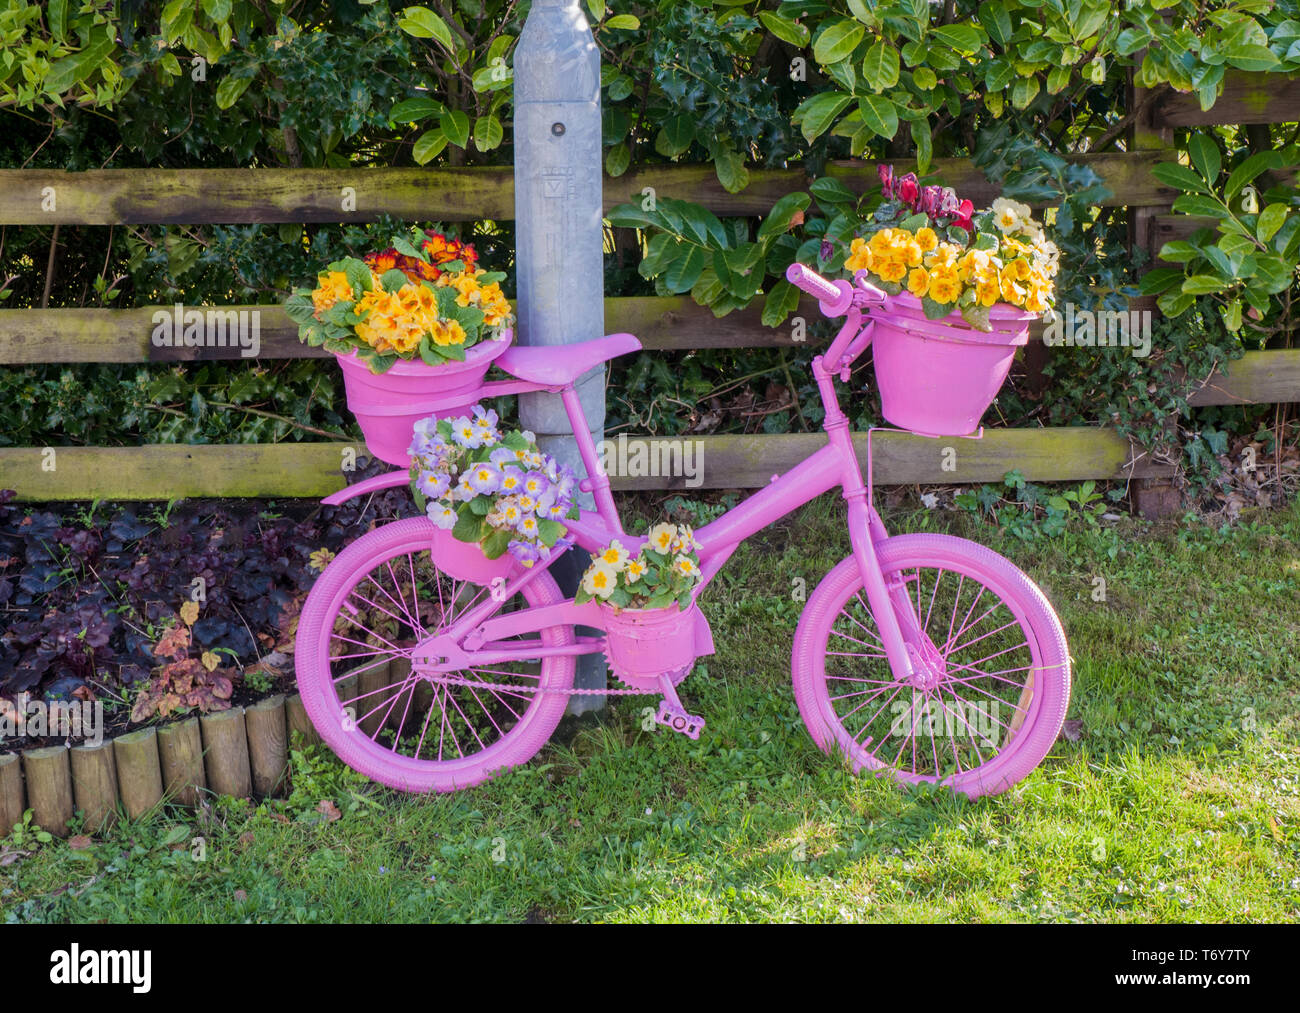 Fahrrad am Straßenrand lackiert rosa mit blume Anzeige der Gelb roten und blauen Primeln. Elswick Beste Gehaltene Dorf Lancashire England Großbritannien Stockfoto